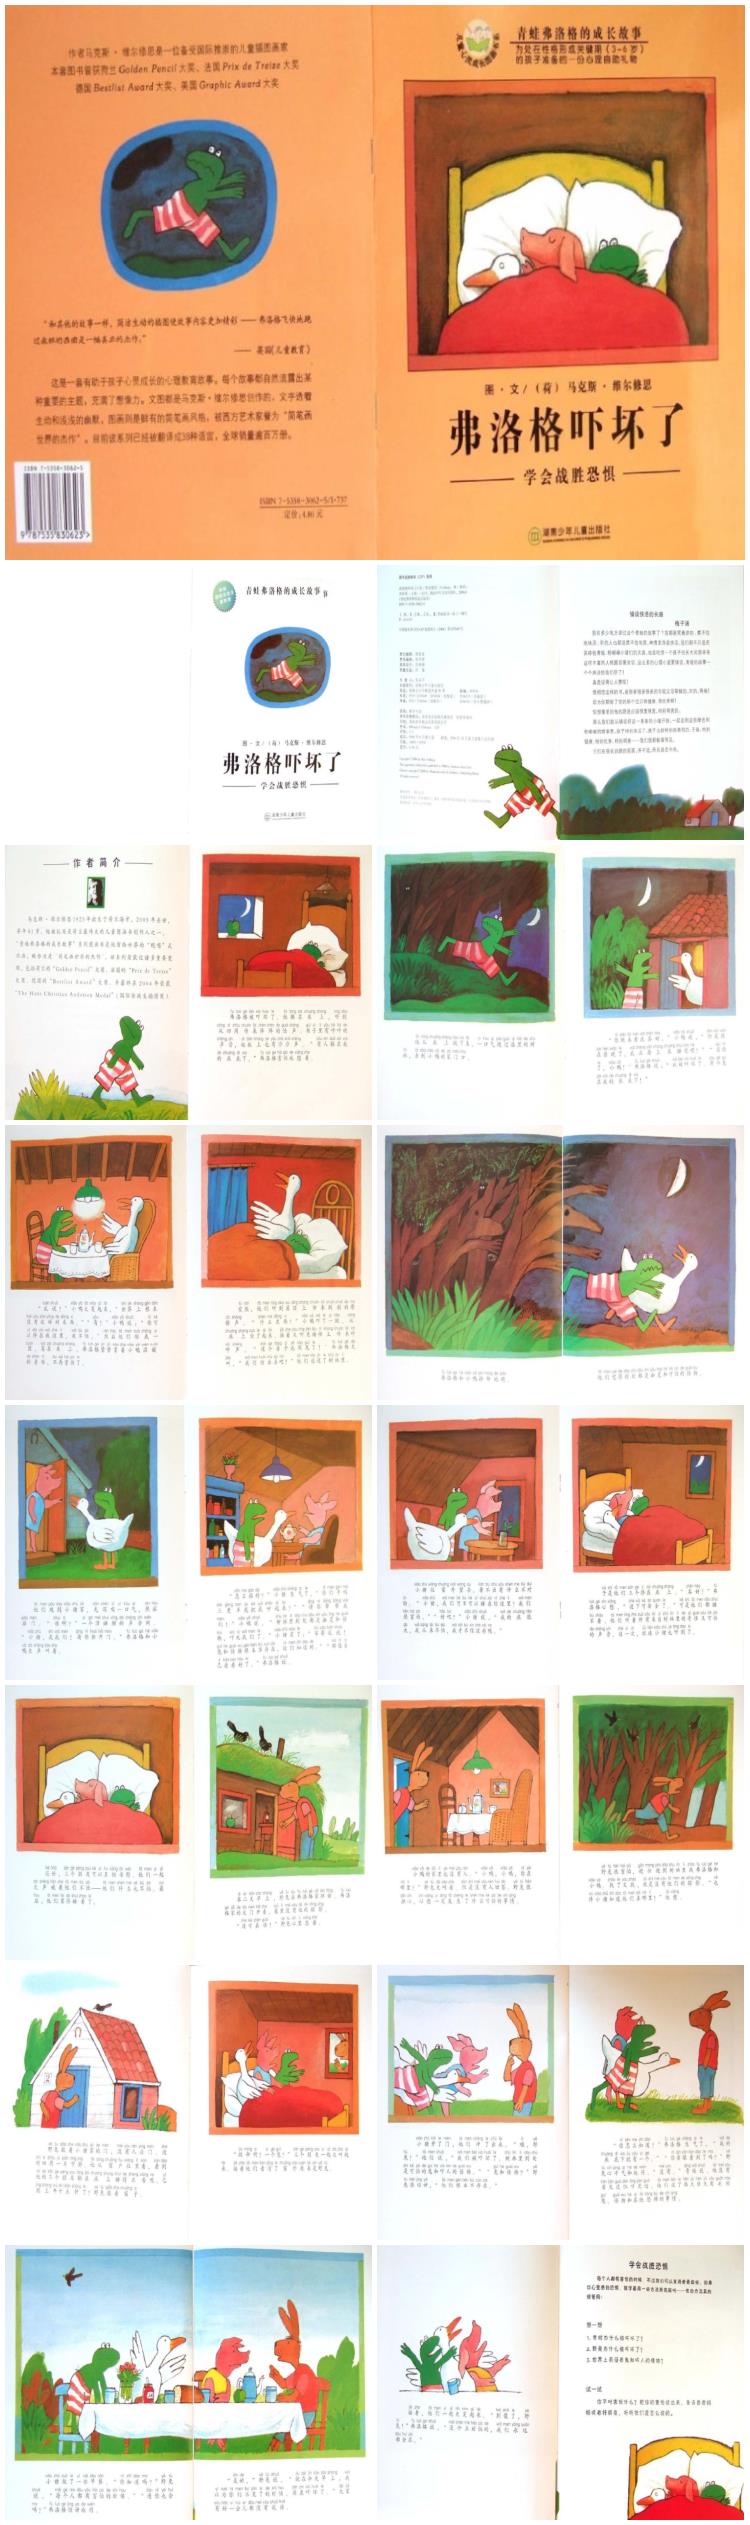 《弗洛格吓坏了》童话绘本儿童故事PPT